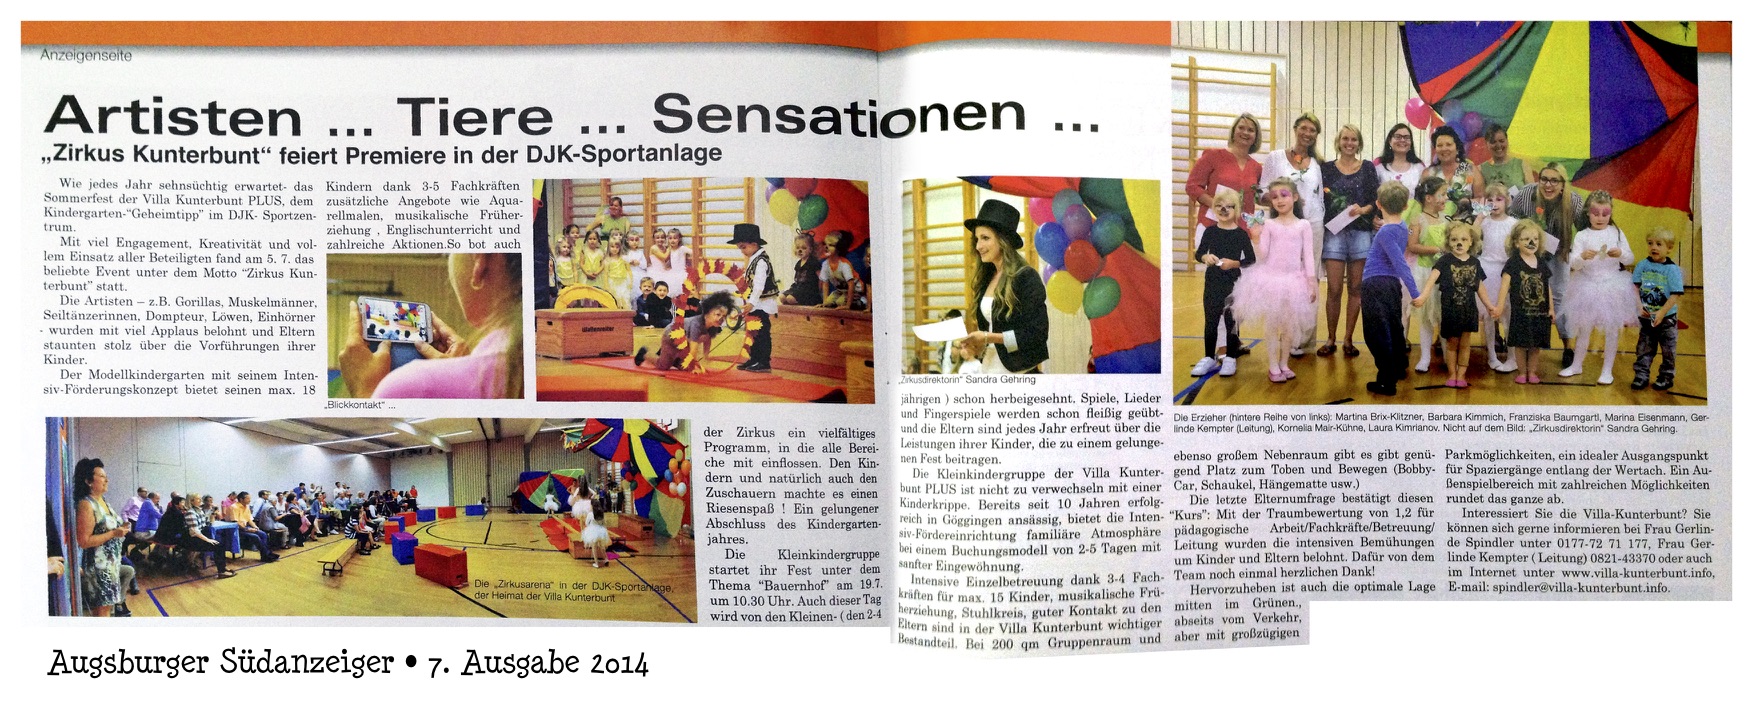 Kindergarten-Sommerfest der Villa Kunterbunt 2014